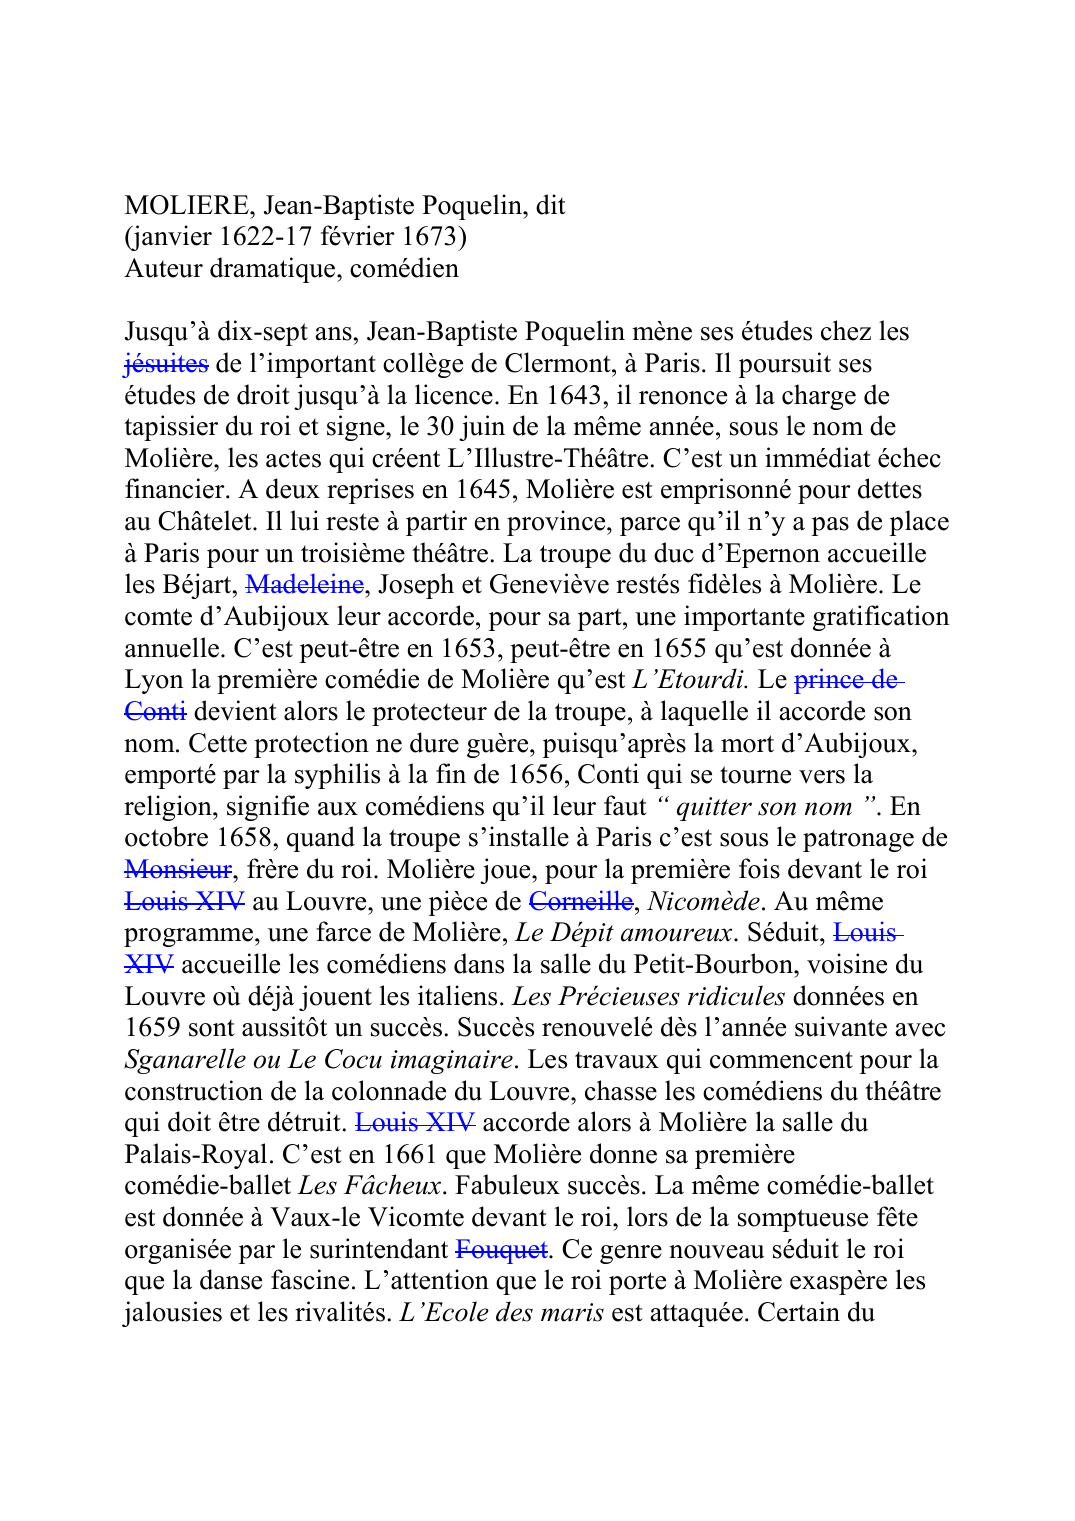 Prévisualisation du document MOLIERE, Jean-Baptiste Poquelin, dit(janvier 1622-17 février 1673)Auteur dramatique, comédienJusqu'à dix-sept ans, Jean-Baptiste Poquelin mène ses études chez lesjésuites de l'important collège de Clermont, à Paris.